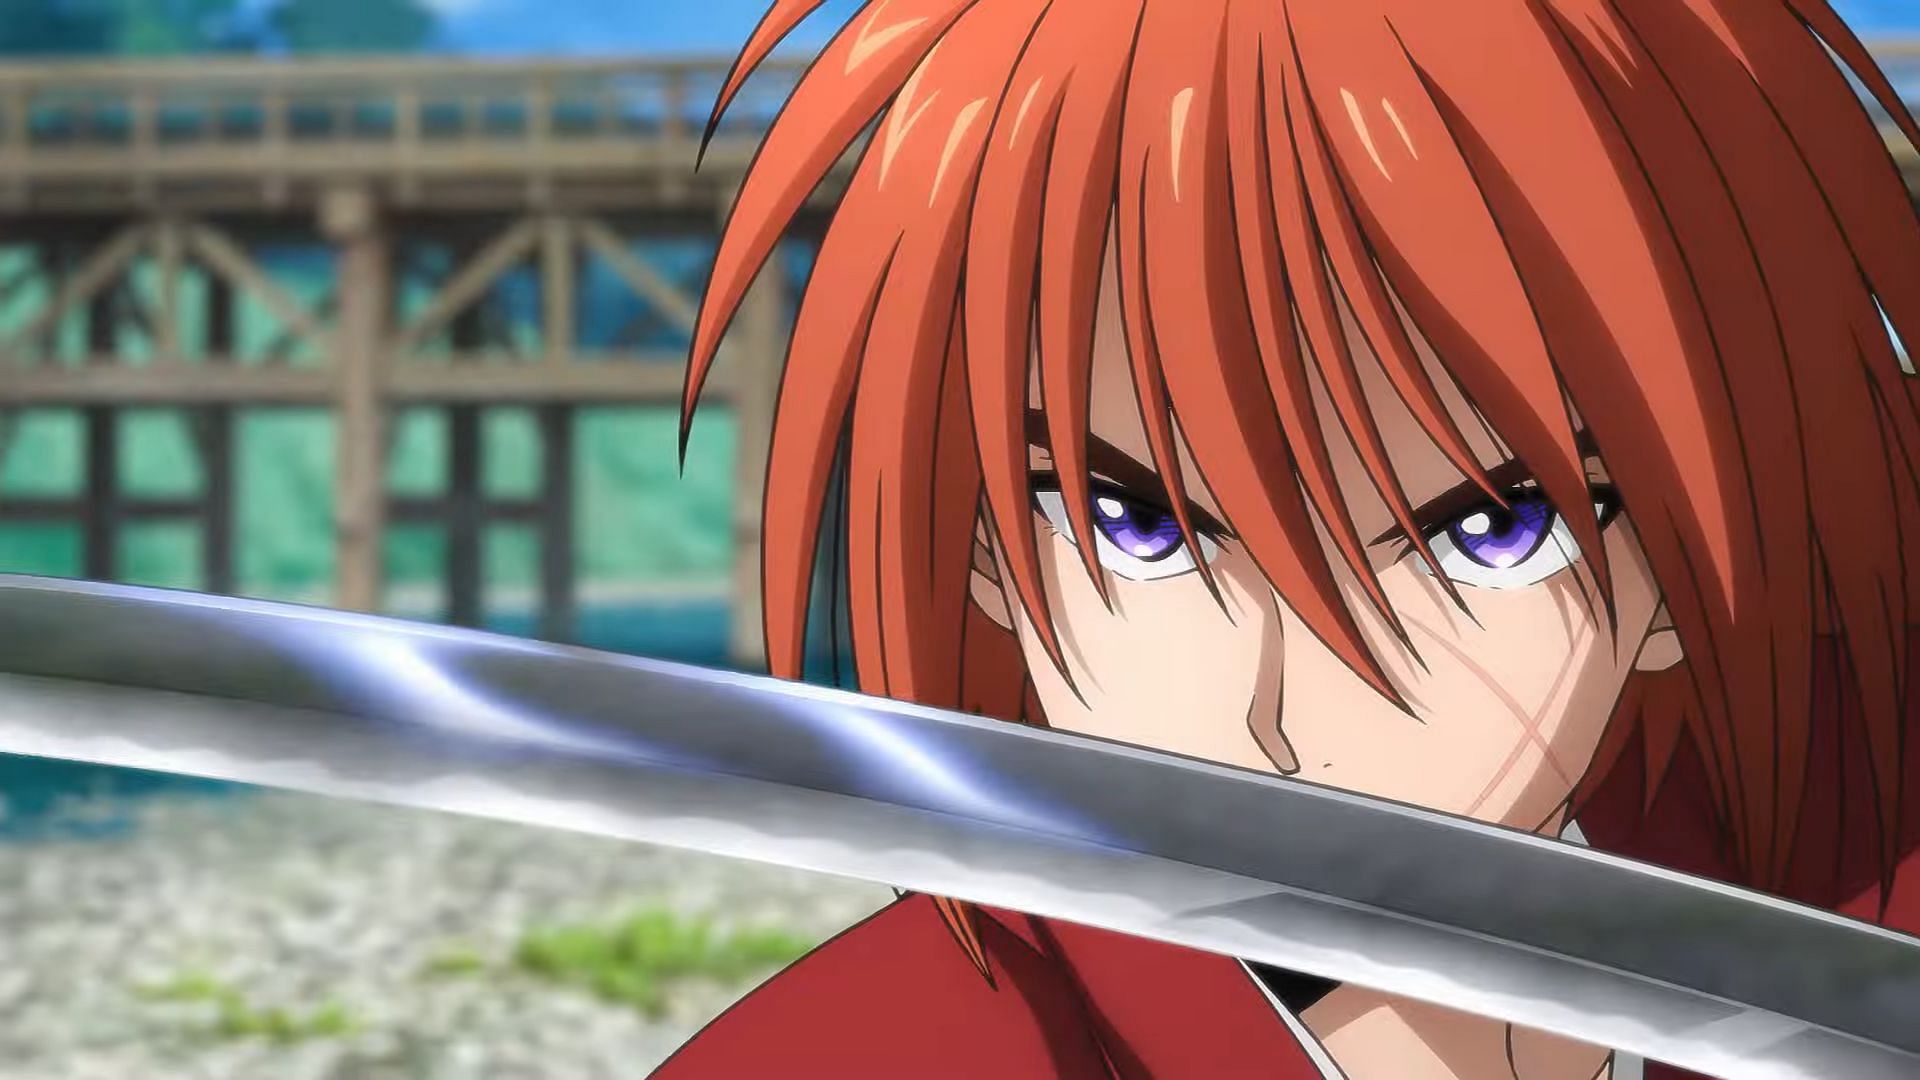 Rurouni Kenshin casts Sakata Gintoki